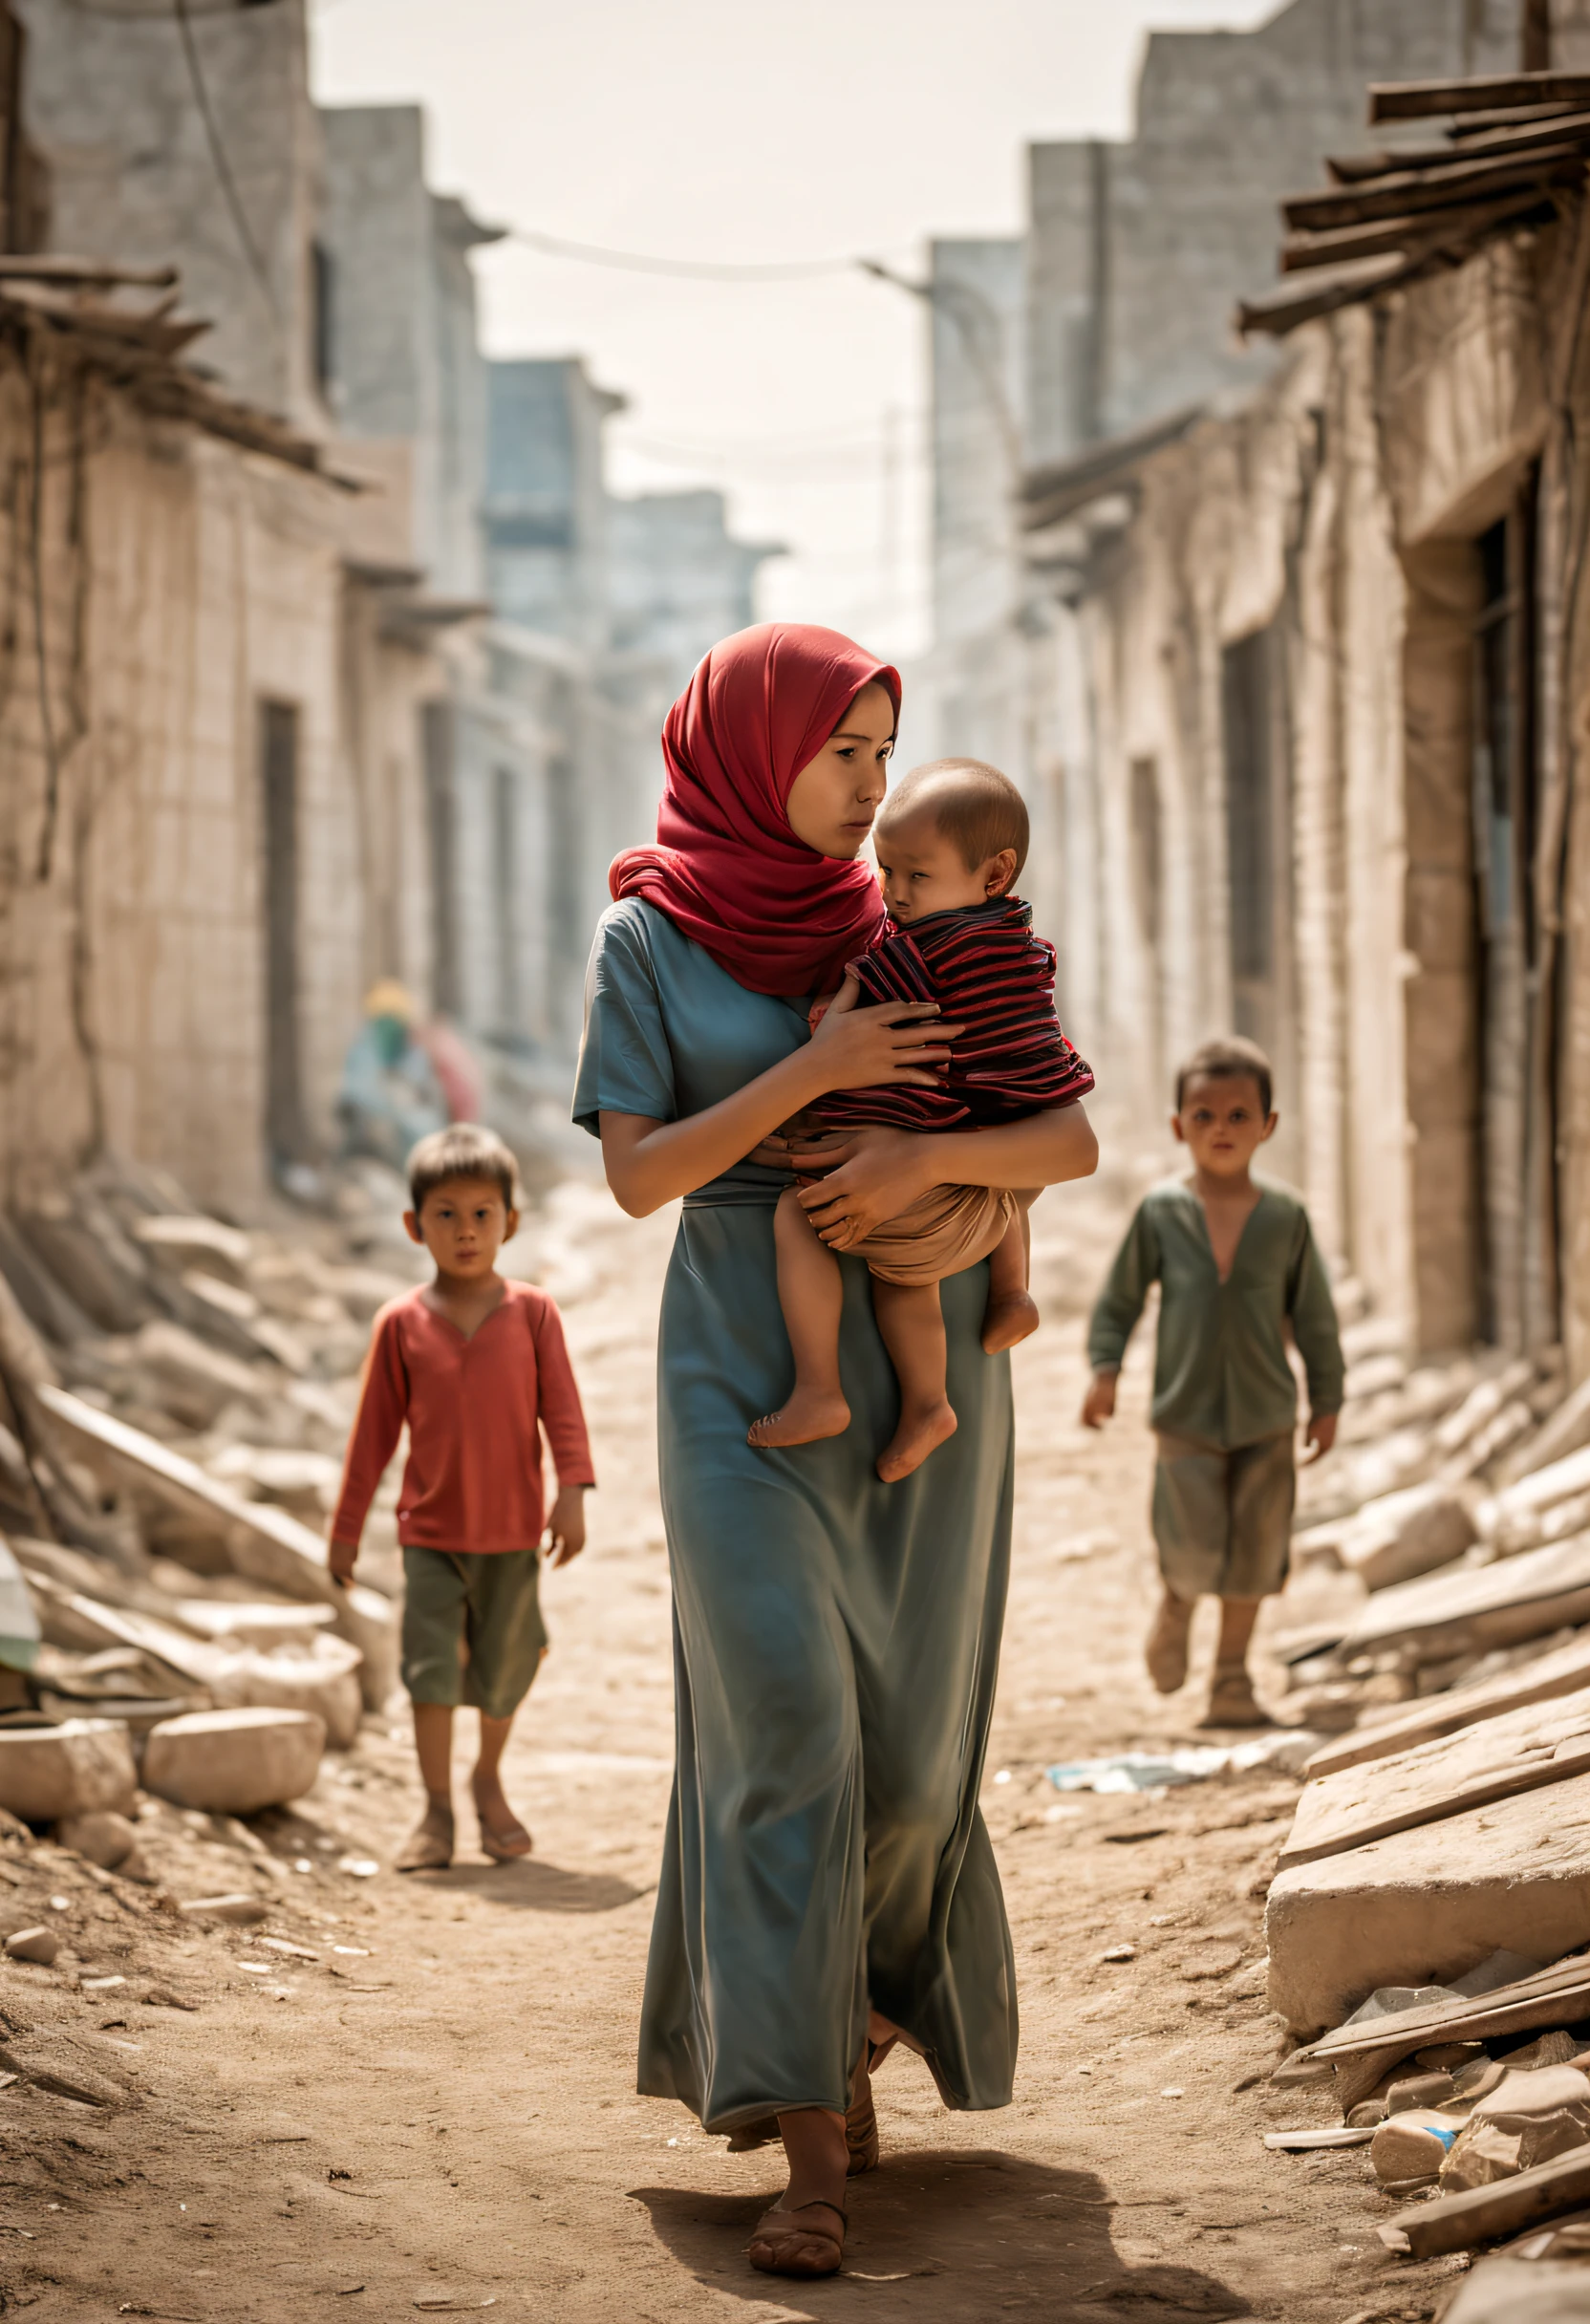 ((电影灯光《巴勒斯坦重拾希望》海报, 80 年代电影海报，一位年轻的母亲，她身后是一群无辜的孩子。母亲的眼神里流露出坚定和责任，她的脸上充满了担忧和对未来的希望。她用双臂拥抱孩子，仿佛默默地保护他们免受战争的侵扰。背景是一片废墟的城市遗址，战争留下的灾难景象。然而，一束微弱但坚定的光芒从废墟中升起，它象征着希望和重生。光照射在母亲和 ，给予温暖和舒适，仿佛在告诉观众，即使在最黑暗的时刻，我们仍然可以找到希望和力量。整个画面的色调将是深蓝色和灰色，它代表了战争的阴暗和悲伤。然而，母亲和孩子们穿着鲜艳的衣服，代表着生命的活力和对美好未来的向往。在屏幕底部，影片名称采用简洁有力的英文字体印刷：“巴勒斯坦充满希望”。这不仅代表了电影的主题，这也是对观众的呼吁：我们一起工作吧，让希望在战争中升起))，标题, 和致谢, 高分辨率, 极其详细, 鲜艳的颜色, 戏剧灯光, 实际的, 运动装, 散景, 電影, 有创意的设计, 气氛紧张, 深色背景, 悬念重重, 阴影人物, 忧郁的语调, 出色的排版, 艺术构图, 动态角度, 对比色, 景深, 惊人的视觉效果, 强烈的情感, 令人难忘的图像, 迷人的视觉效果, 大气设置, 戏剧, 神秘的氛围, 精湛工艺, 真人, 有趣的故事, 专业艺术品, 引人入胜的故事情节, 神秘的表达, 電影 style, 发人深省的象征意义, 引人入胜的海报设计, 标志性视觉效果, 智能执行, 视觉震撼, 视觉吸引力, 引人注目, 难忘, 让人想起经典电影海报，